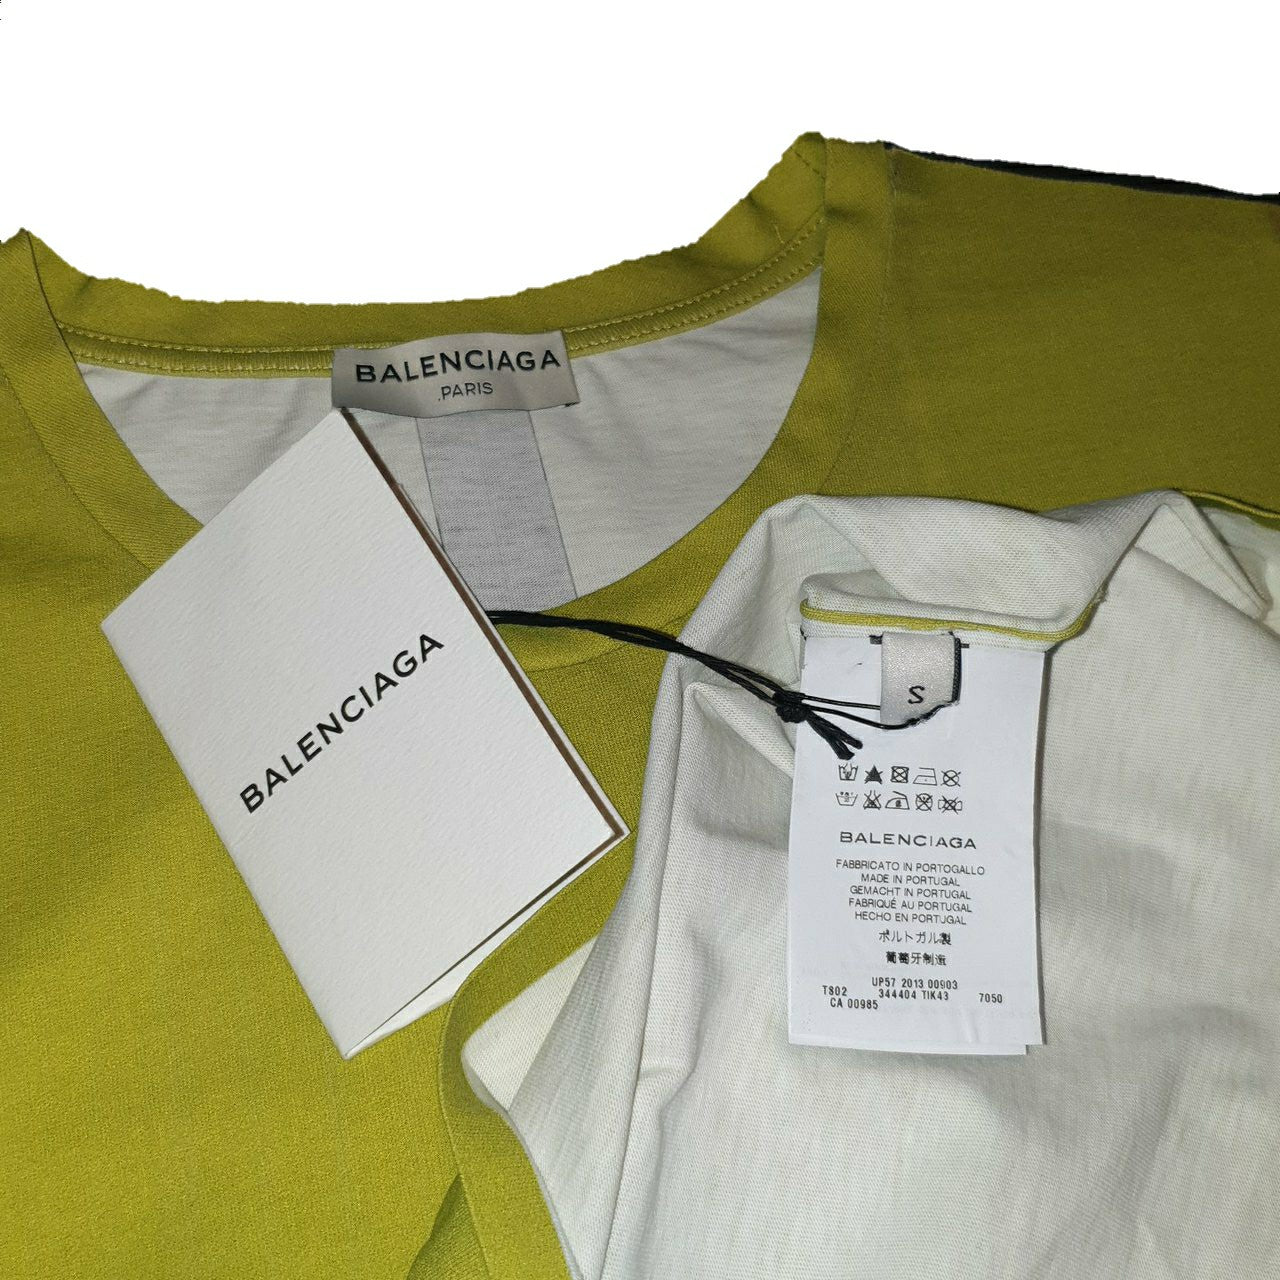 Balenciaga  Shirts  Brand New Balenciaga Shirt  Poshmark